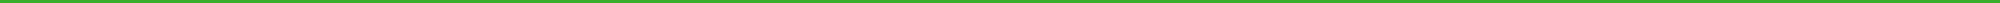 line-green-02.jpg